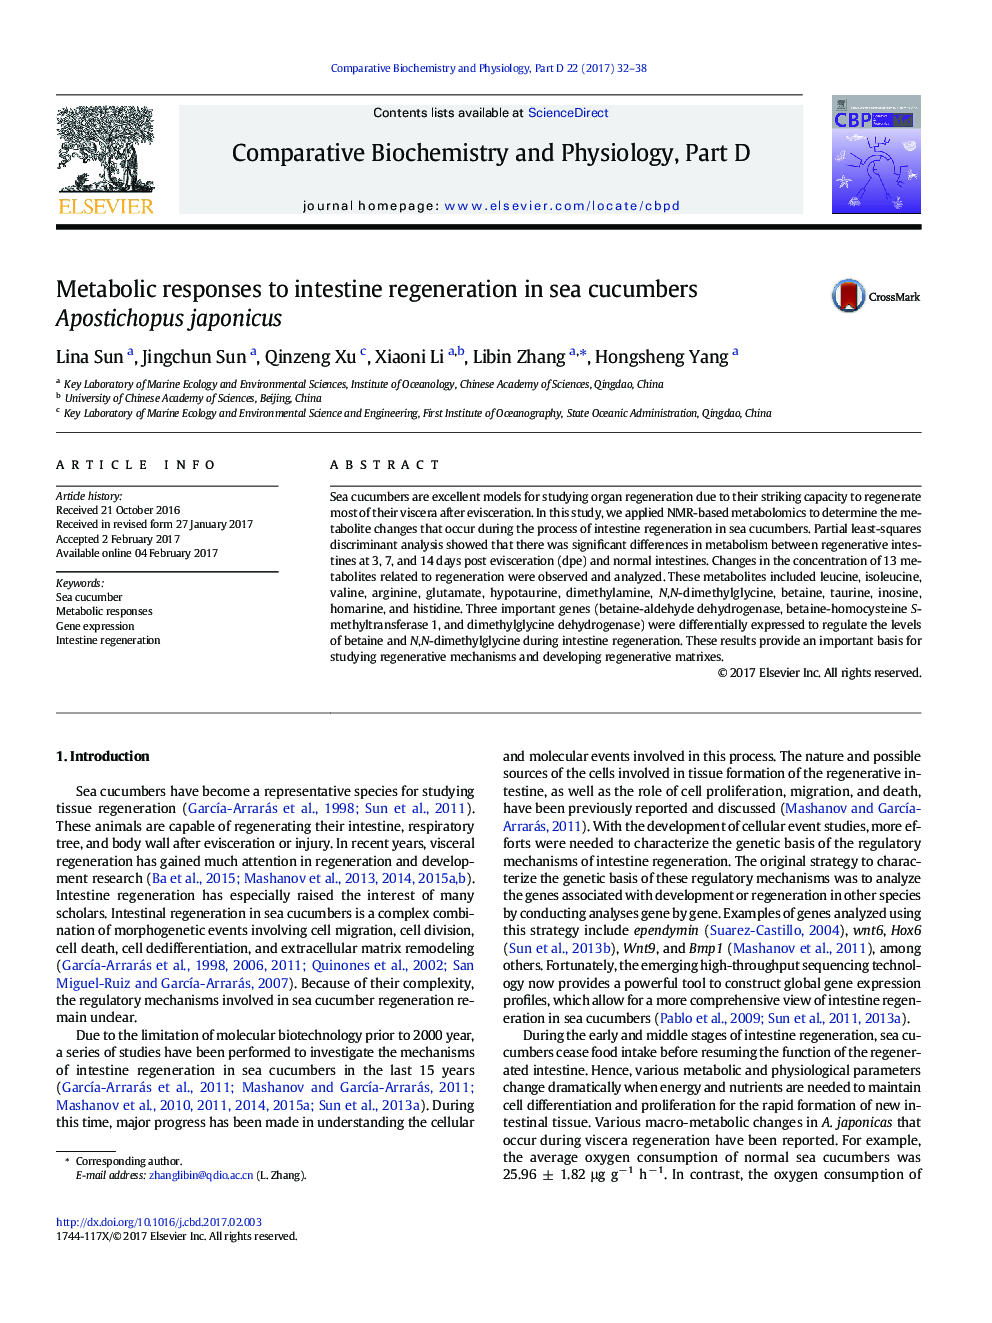 Metabolic responses to intestine regeneration in sea cucumbers Apostichopus japonicus